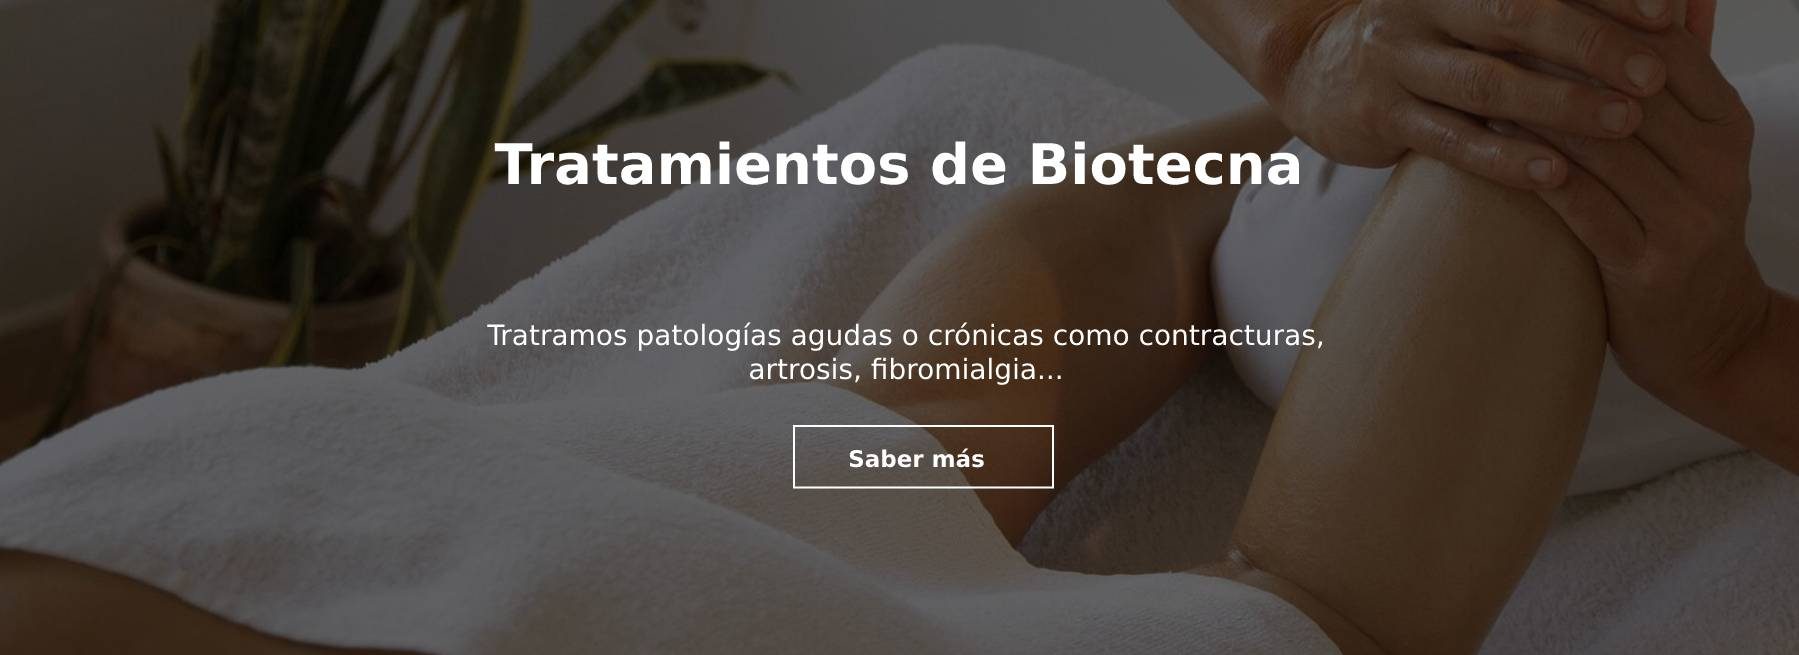 Tratamientos de Biotecna